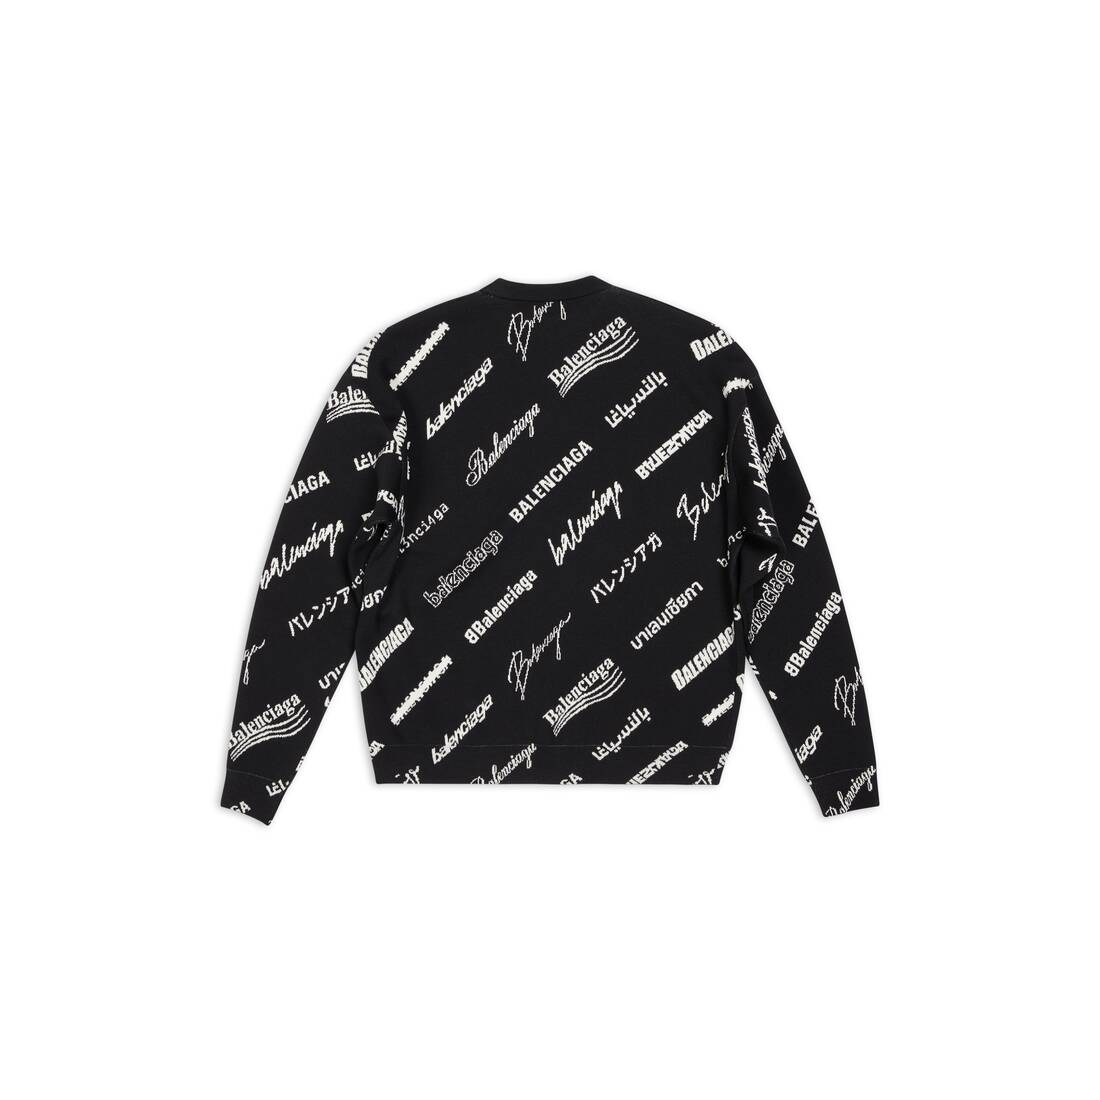 ブラック の メンズ Logomania All Over 長袖セーター